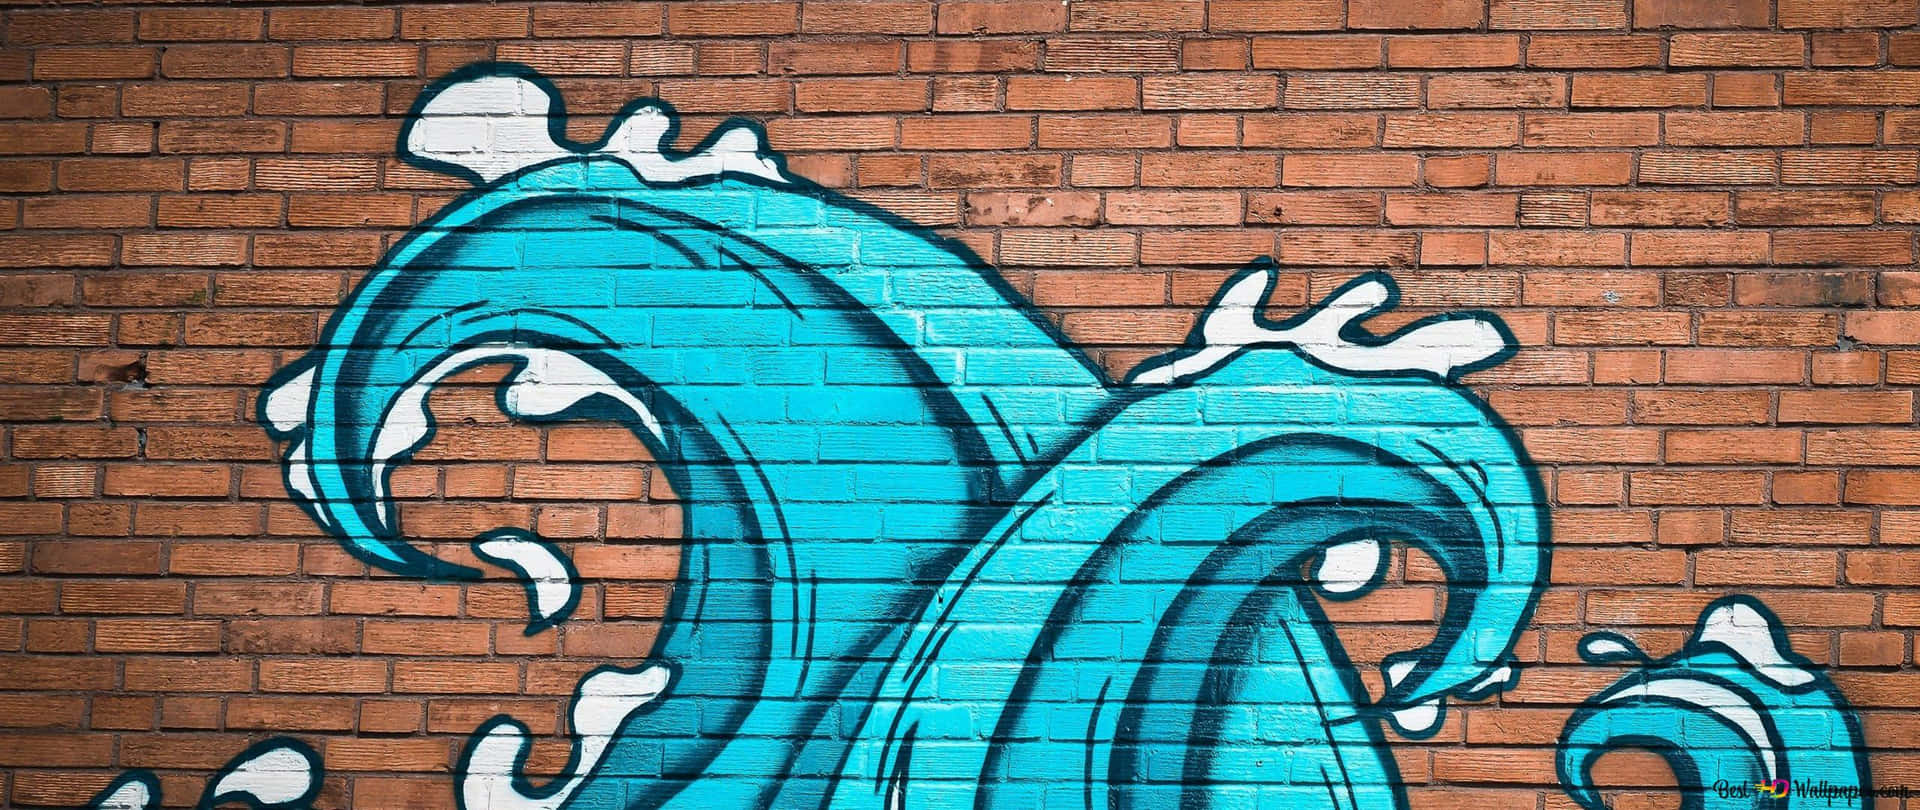 Graffiti Wall Art Of Waves Background